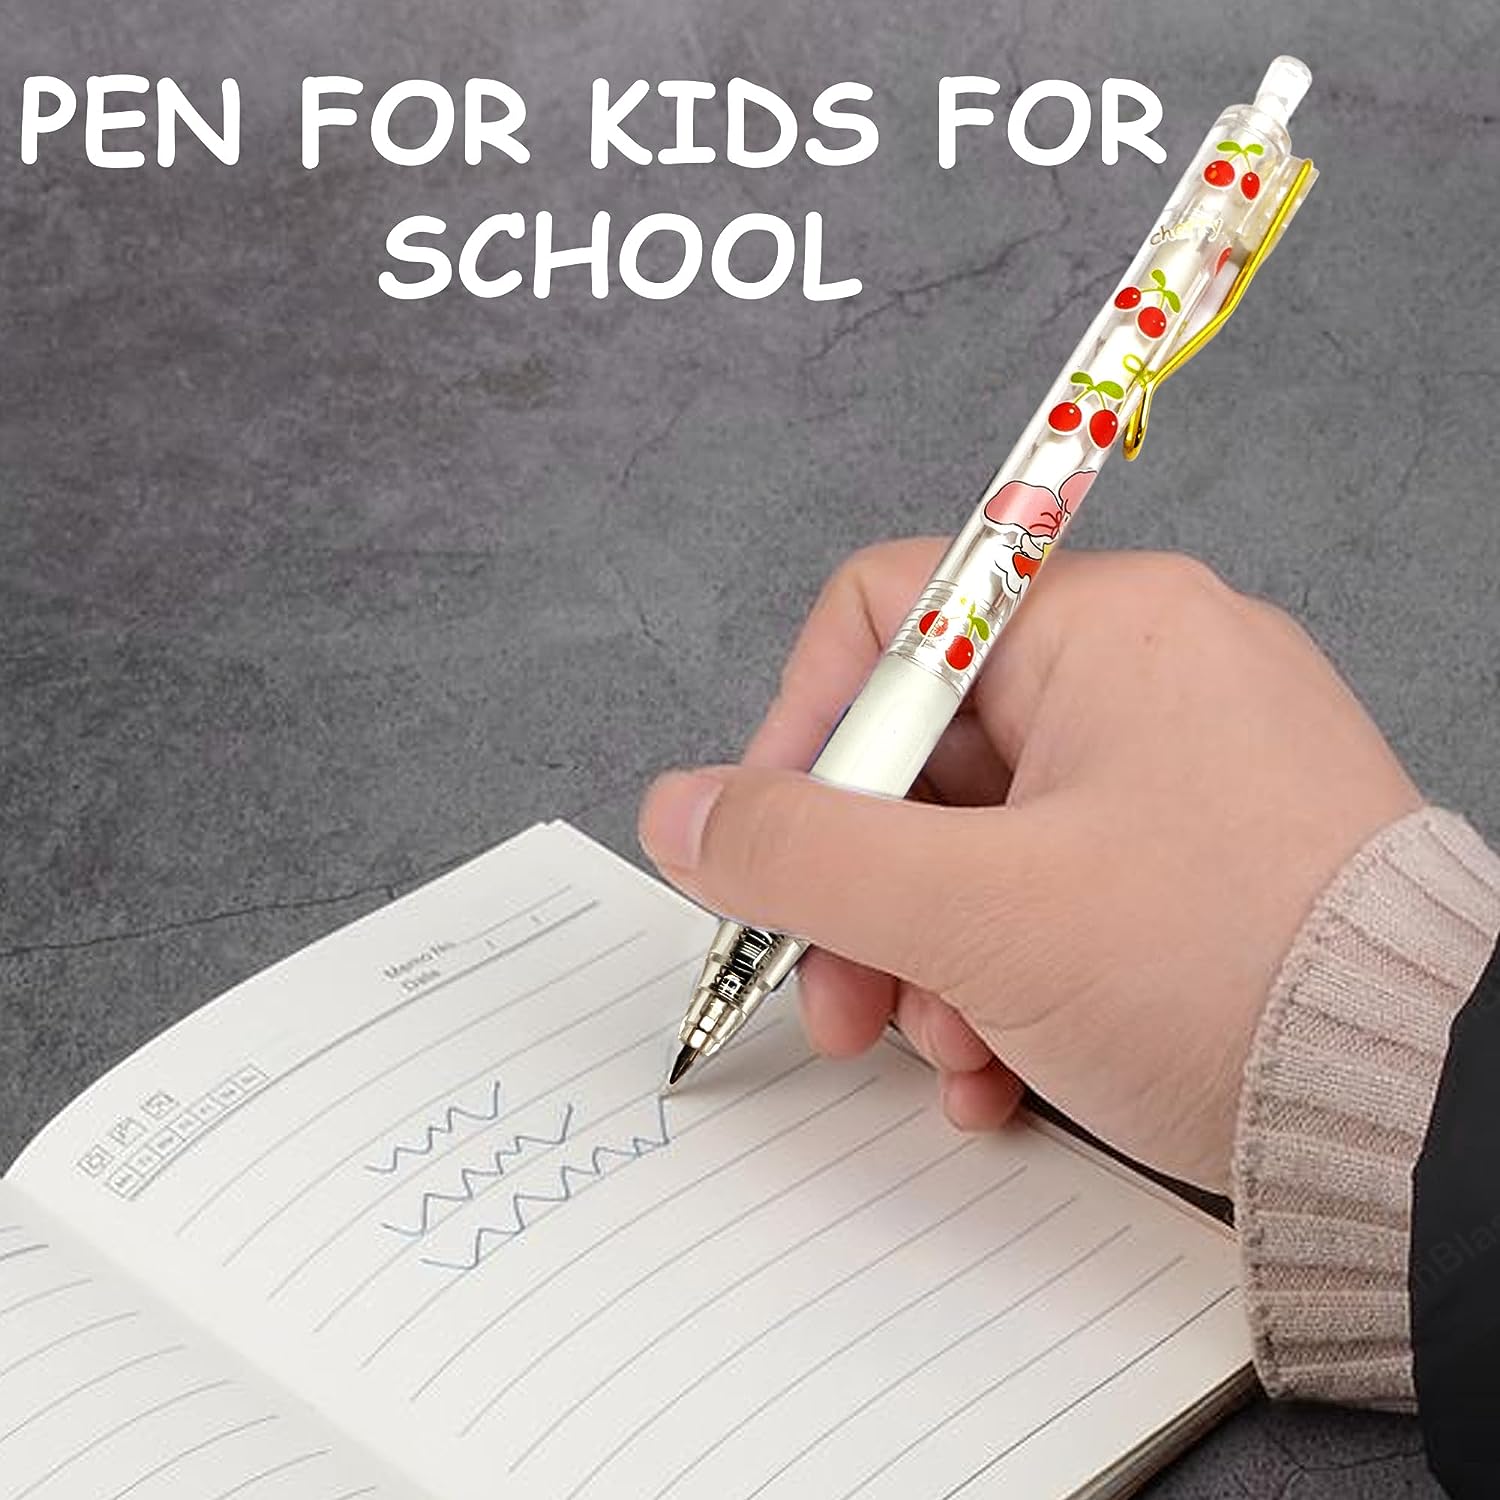 Bunny Pen Set, Gel Pens for School & Office, Aesthetic Pens, Birthday Return Gift, Pen for School & Office, Stationery Items for Kids - Black Ink Gel Pens (Pack of 6)